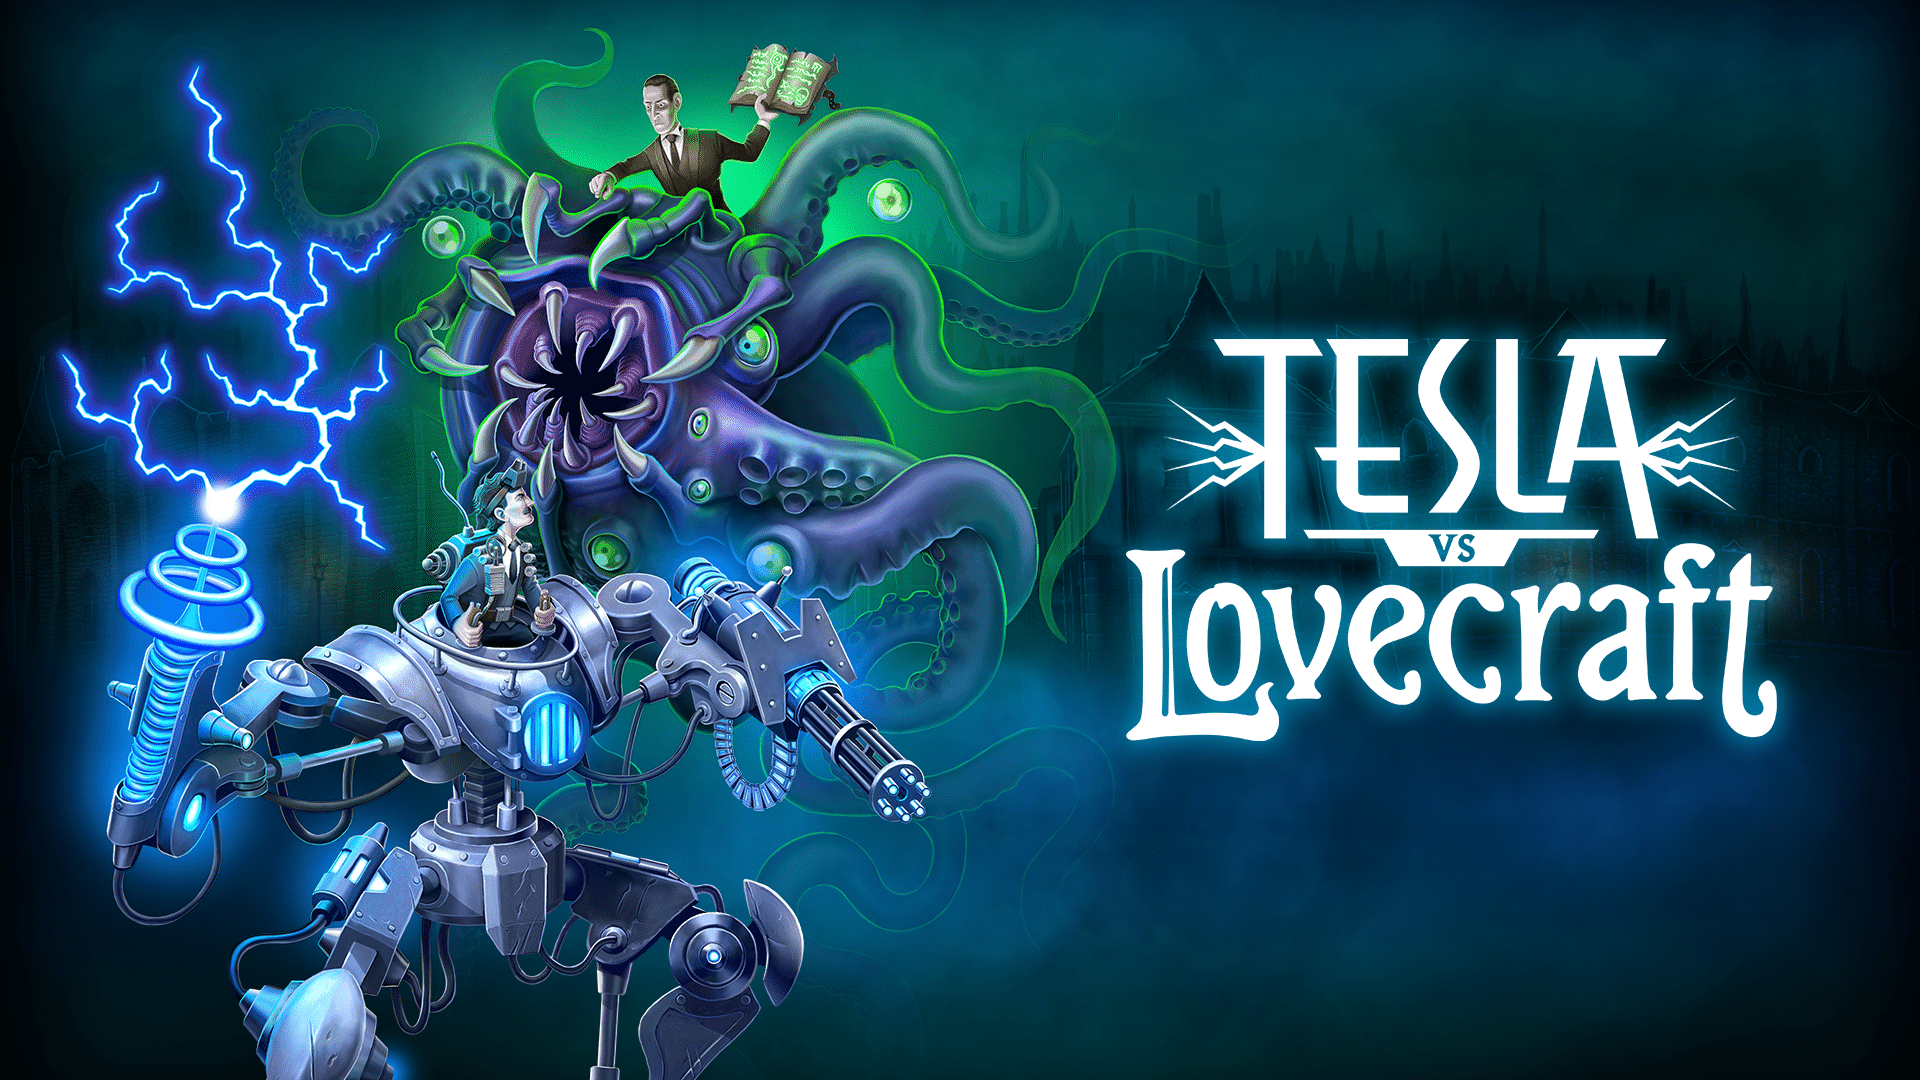 Tesla vs Lovecraft erscheint am 14. März 2018 für die Xbox One.